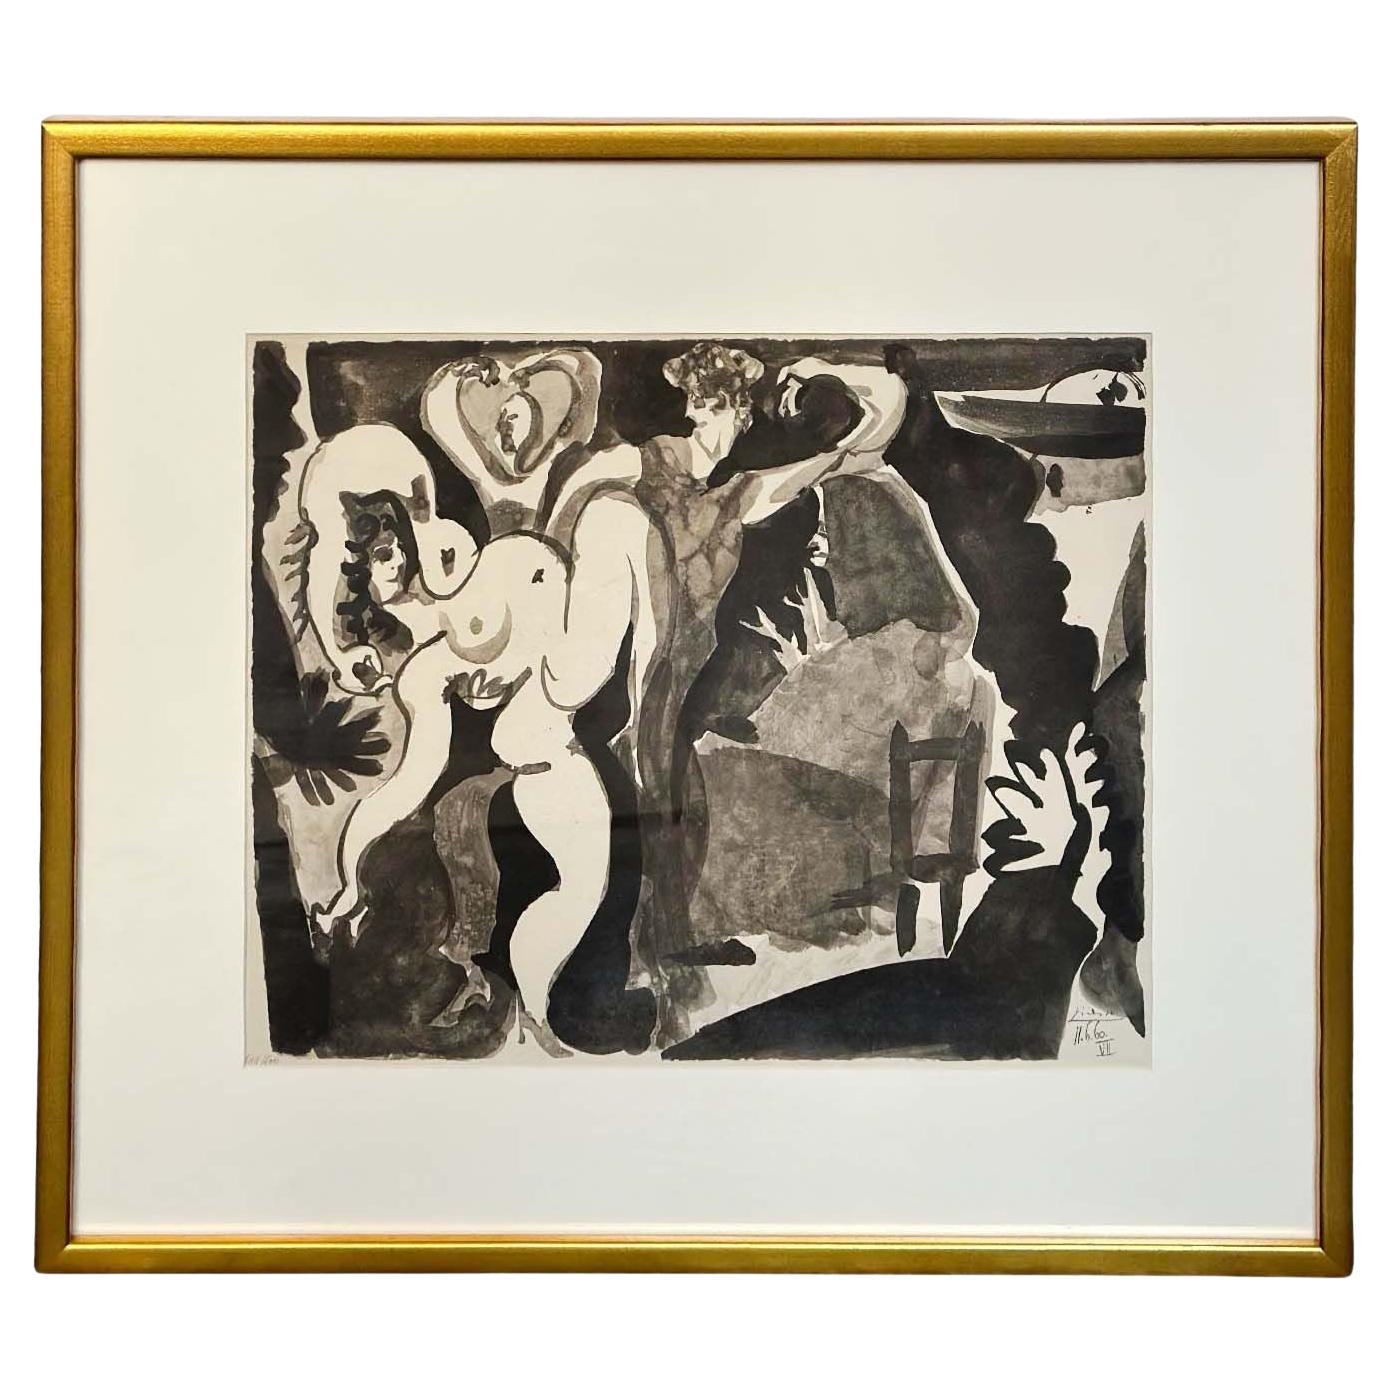 Pablo Picasso Litografía "Mujer bailando", 1960